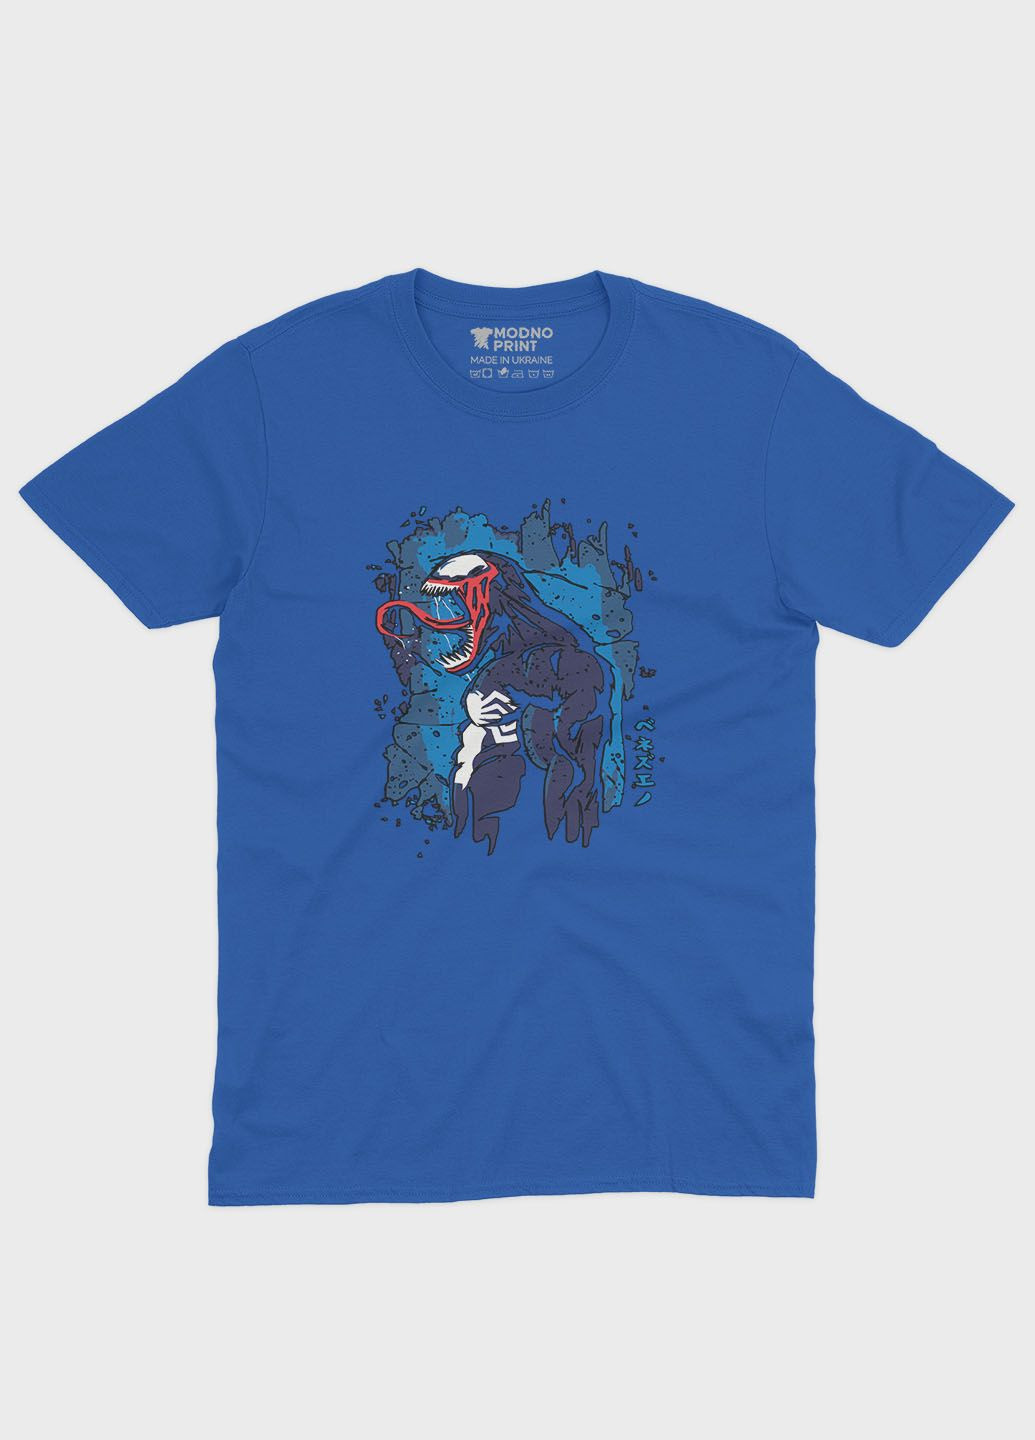 Синя демісезонна футболка для хлопчика з принтом суперзлодія - веном (ts001-1-brr-006-013-014-b) Modno